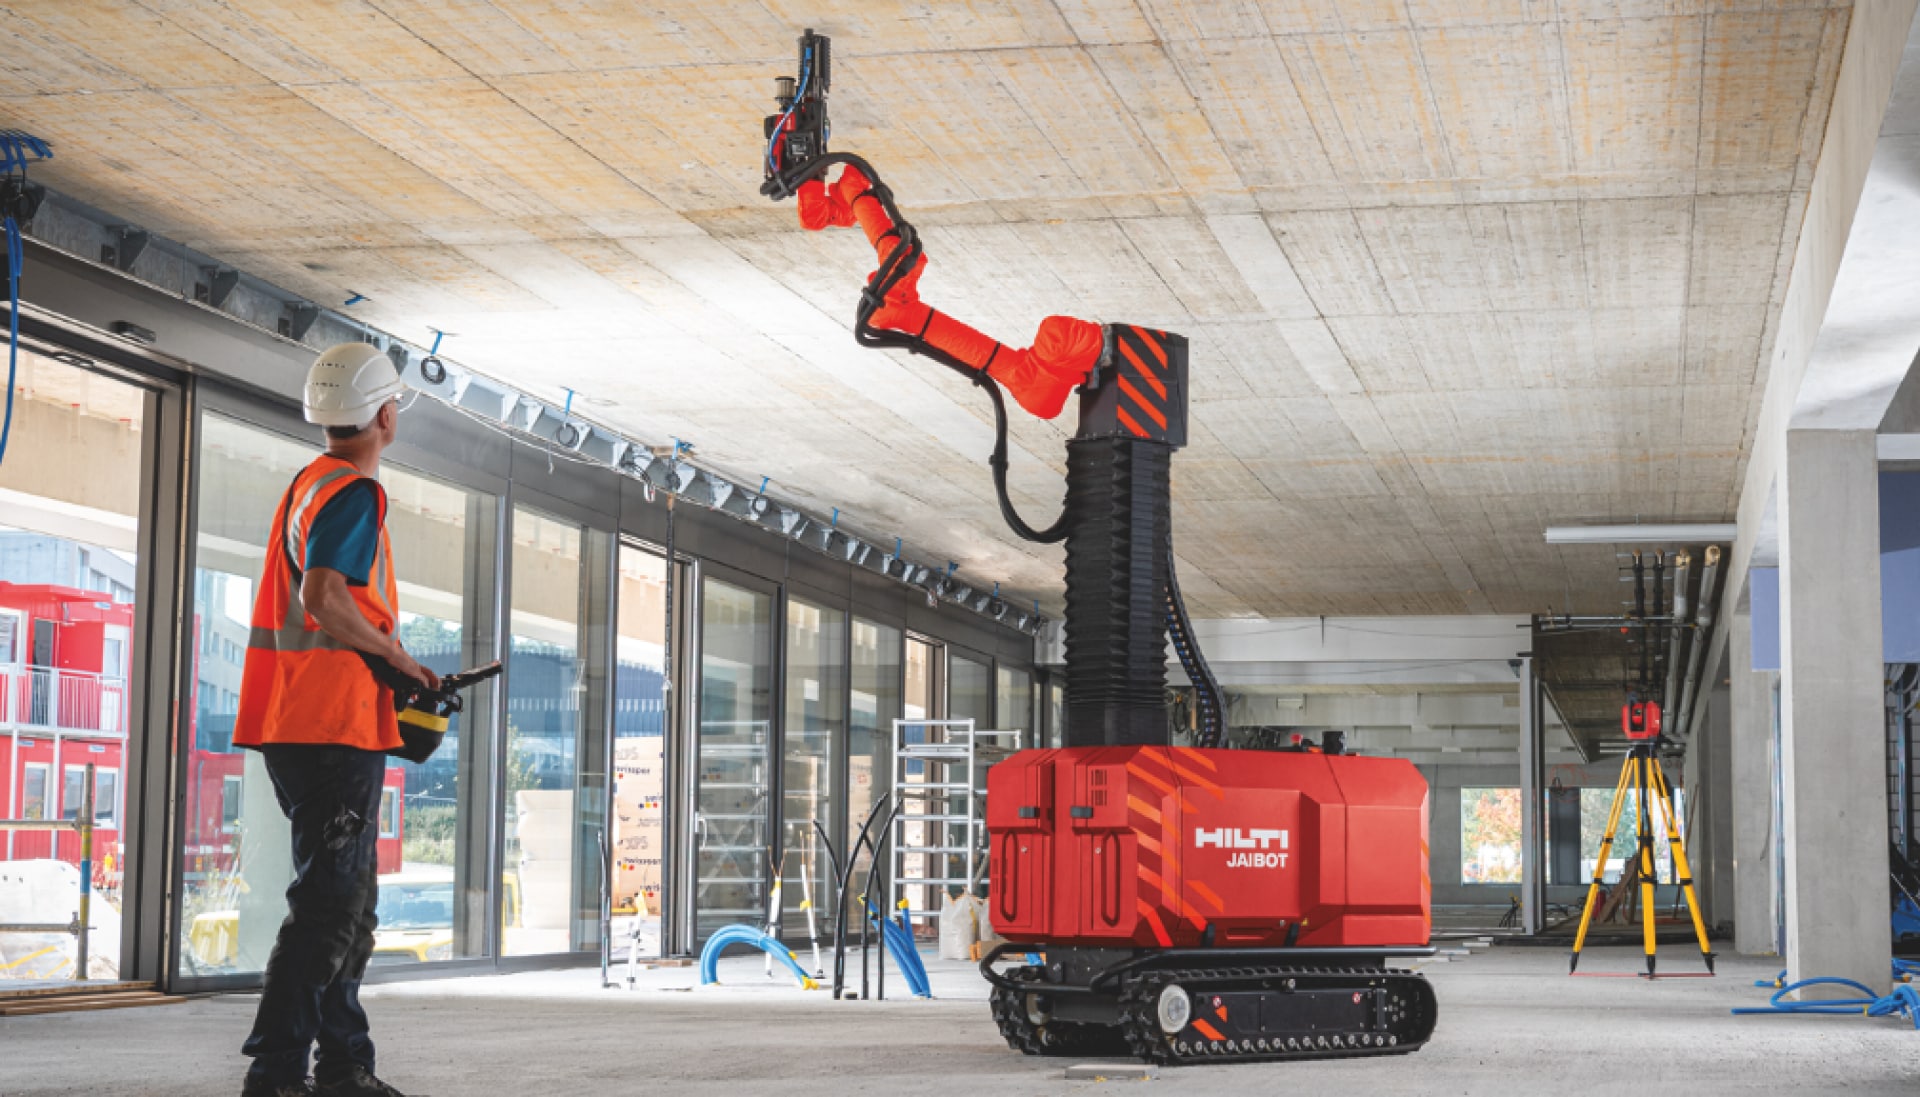 Rakennustyöntekijä käyttää turvallisesti Jaibot-robottia sisäkattojen poraukseen työmaalla